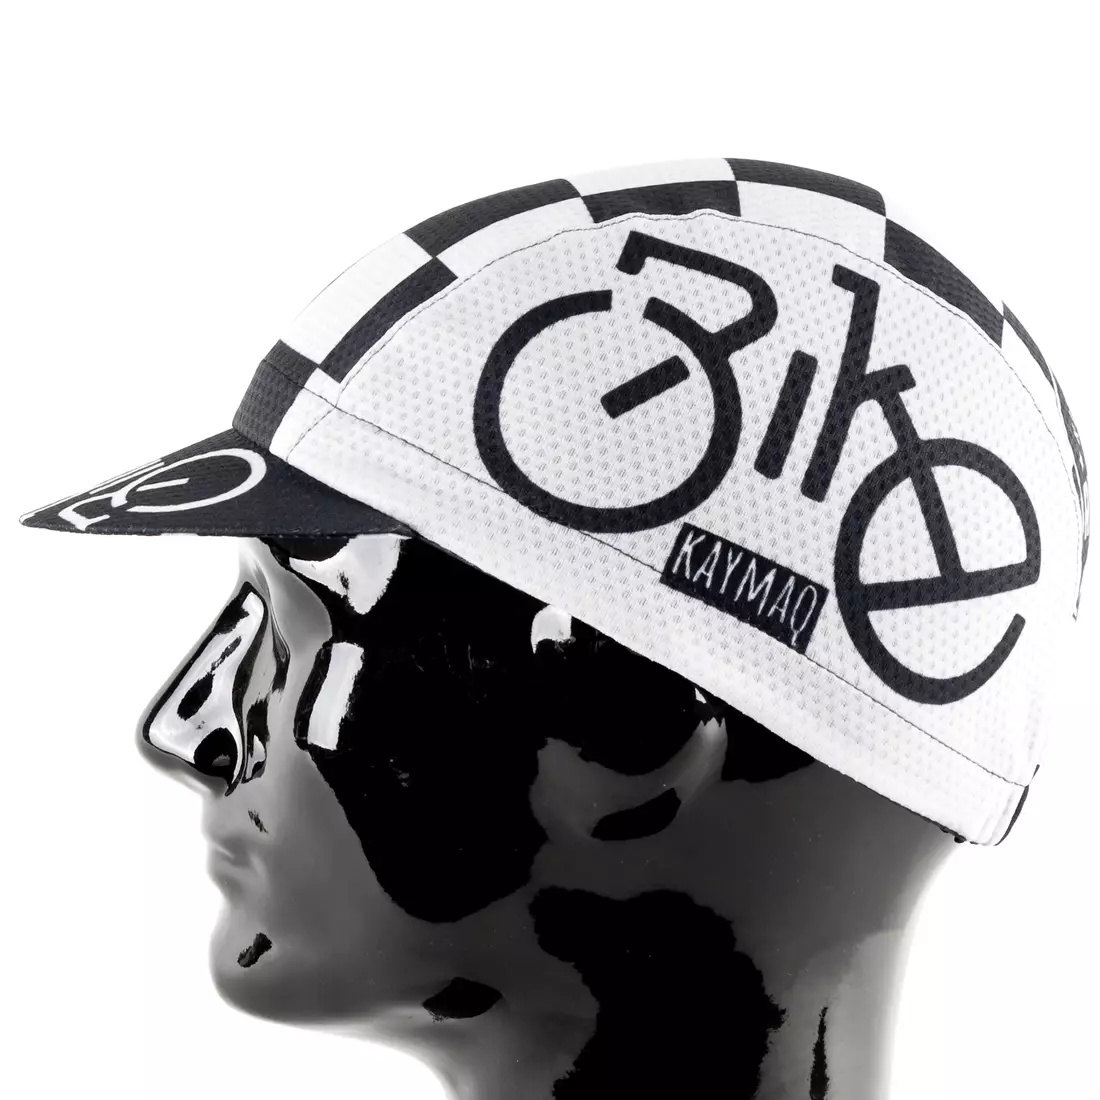 KAYMAQ DESIGN CZK1-9 RIDE BIKE Cyklistická čepice s kšiltem, Černý a bílý